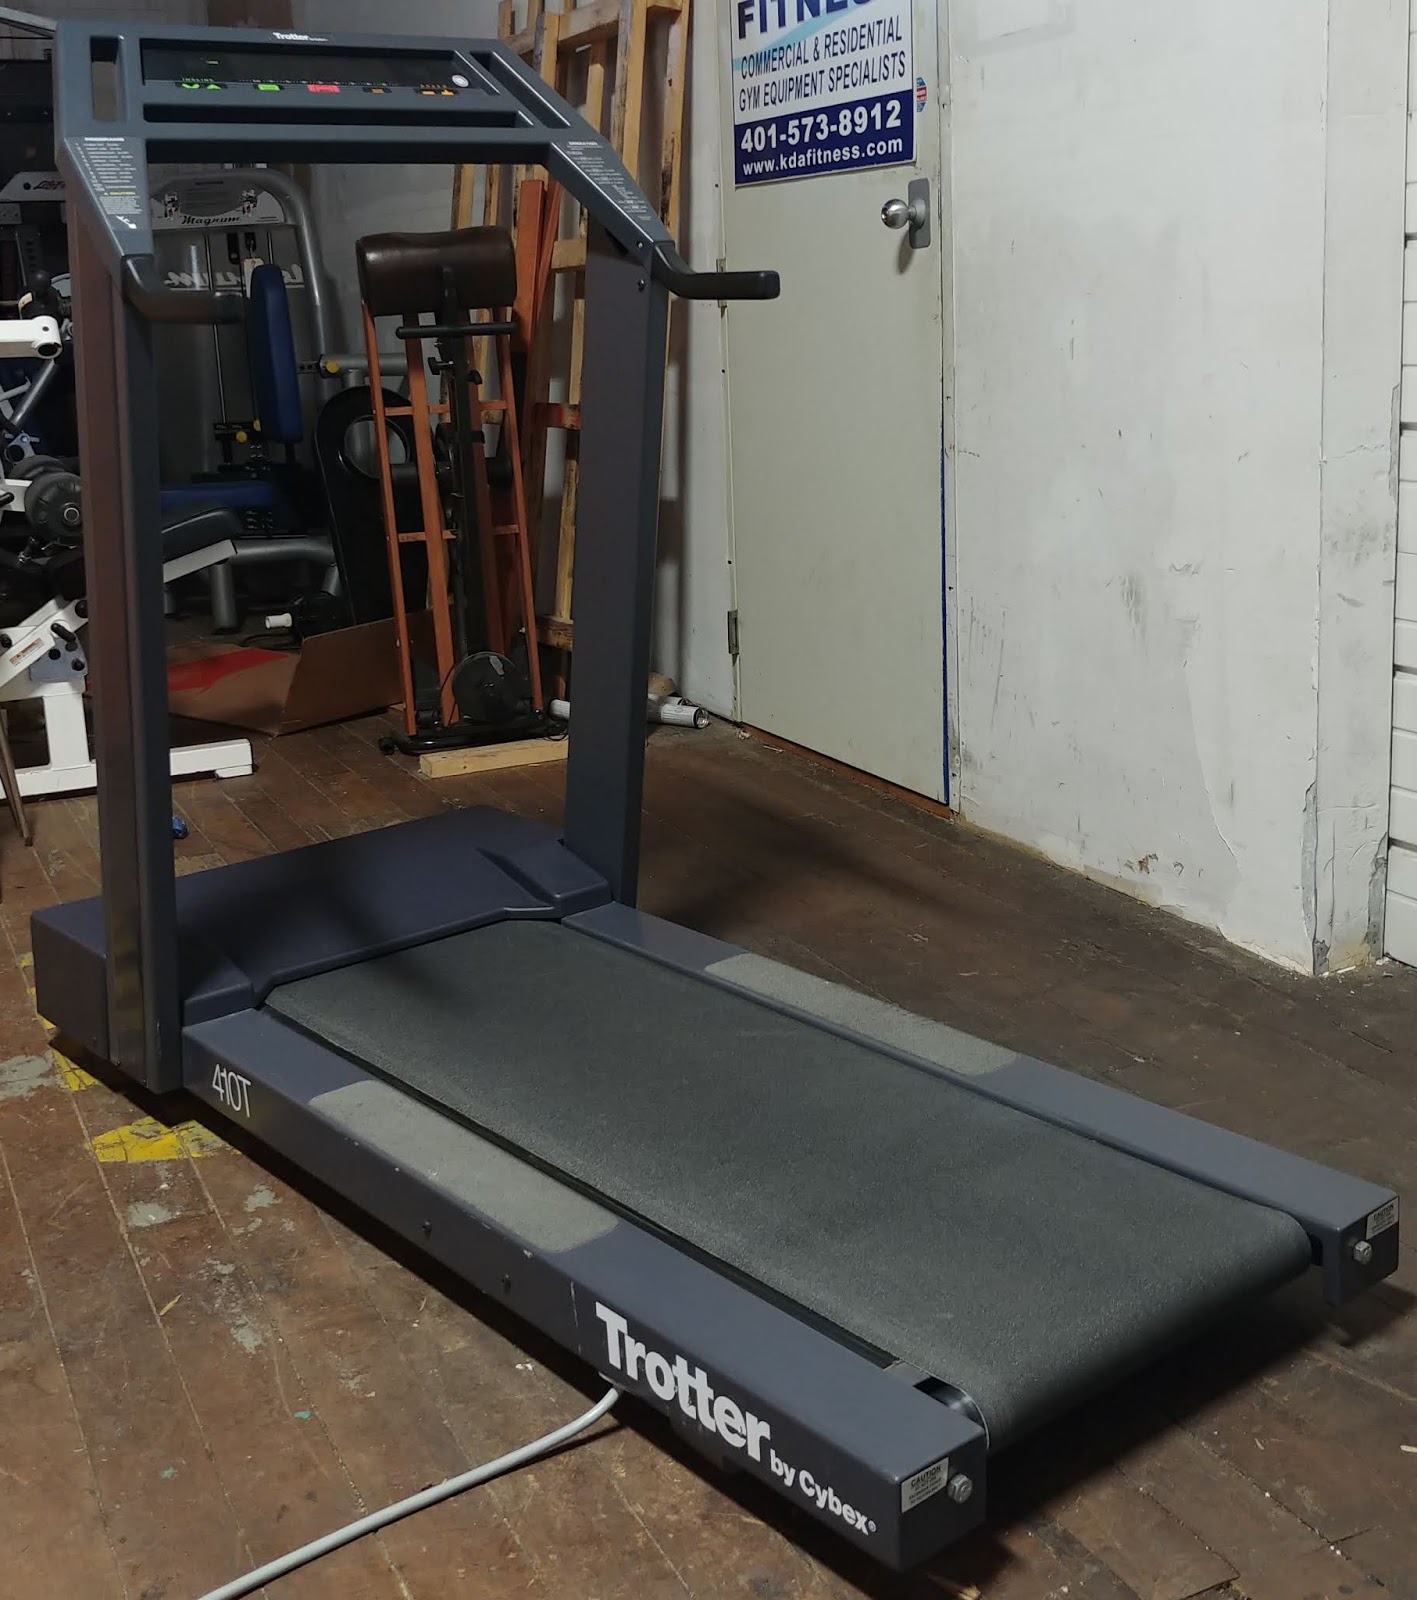 Cybex r series treadmill manual